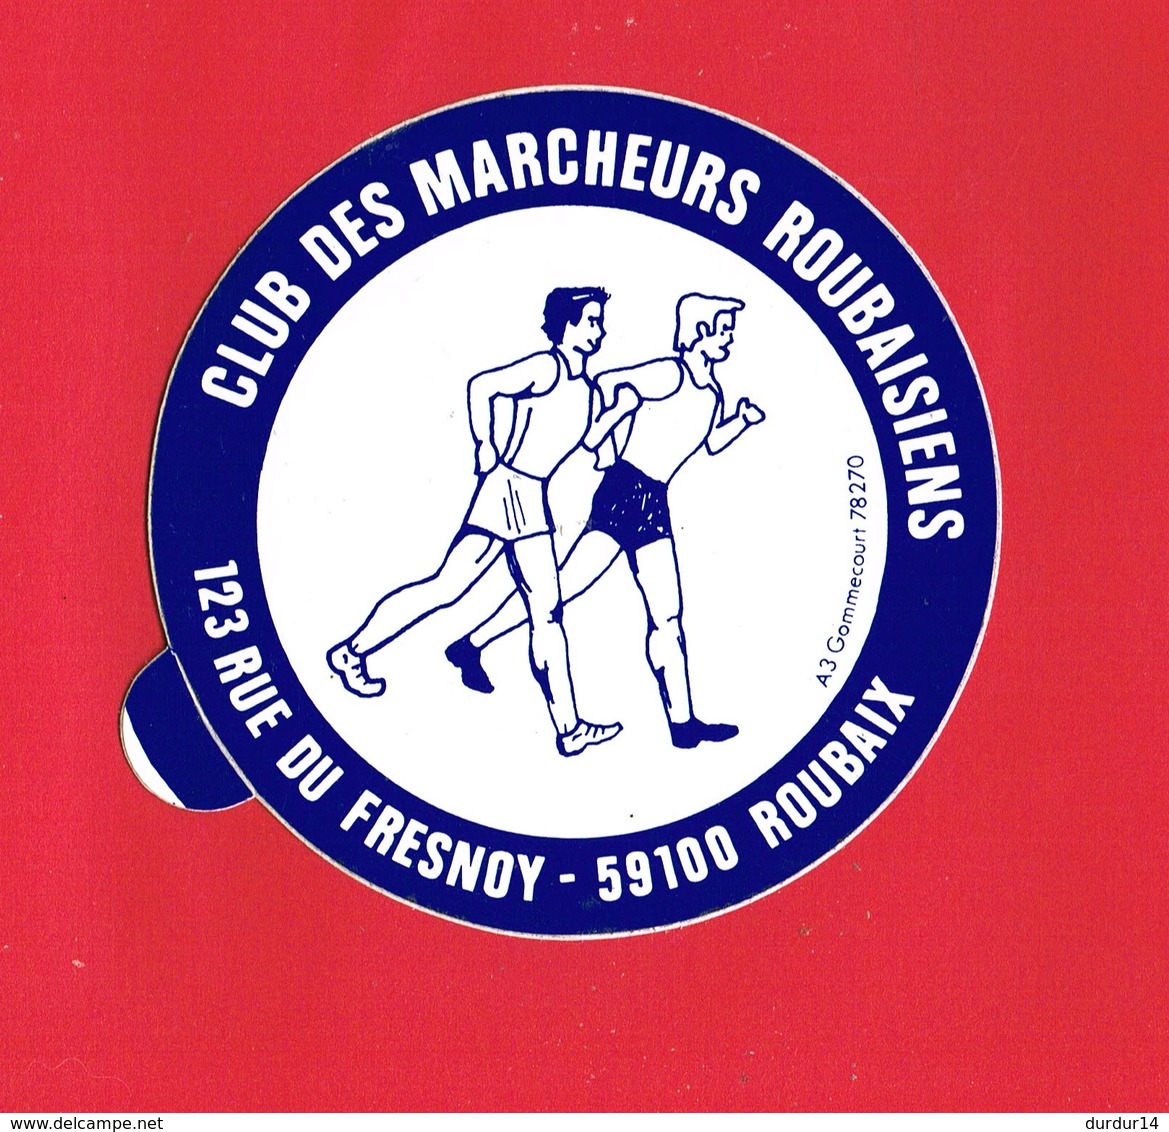 1 Autocollant CLUB DES MARCHEURS ROUBAISIENS 123 Rue Du Fresnoy ROUBAIX - Autocollants